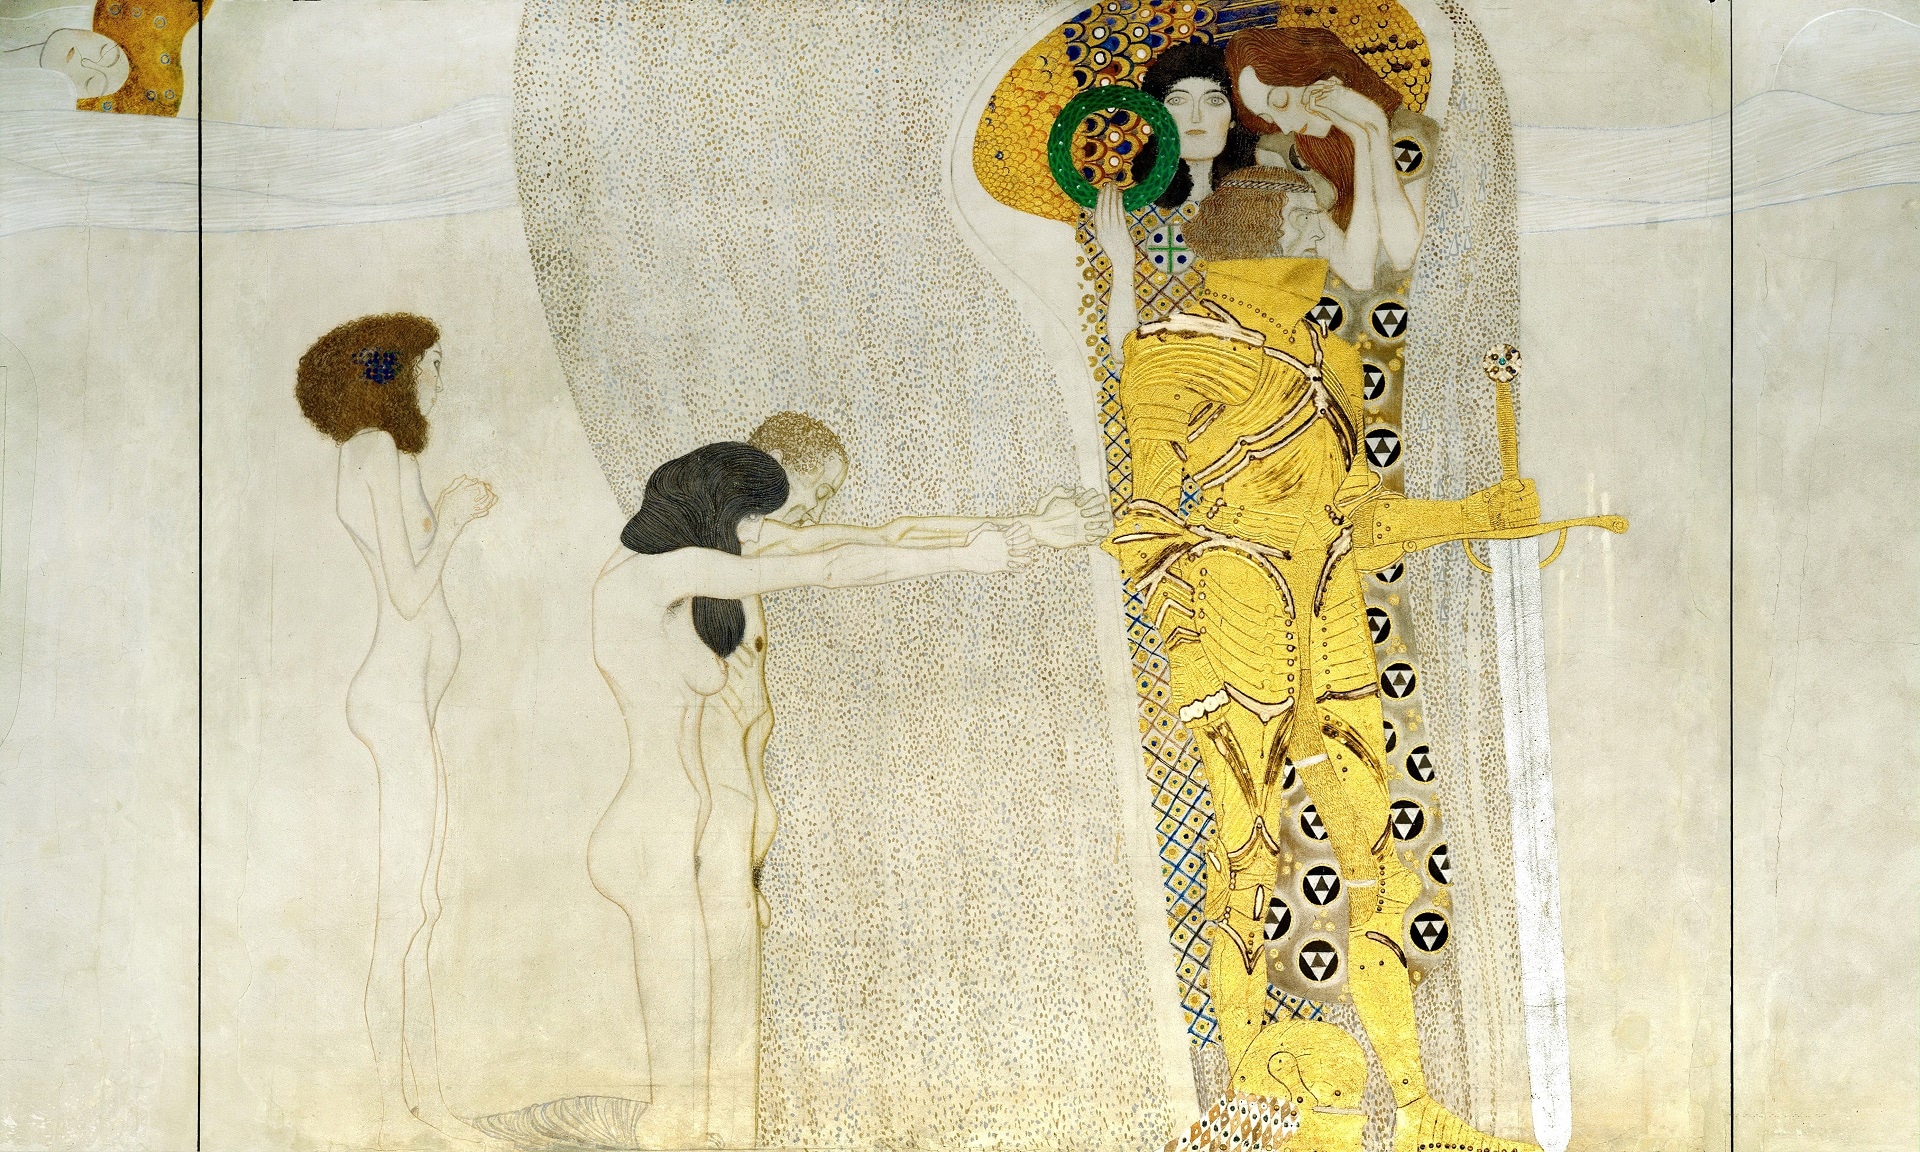 Dettaglio Fregio di Beethoven, Cavaliere in armatura splendente nell’Anelito alla Felicità, Gustav Klimt, 1902, Palazzo della Secessione, Vienna, Austria